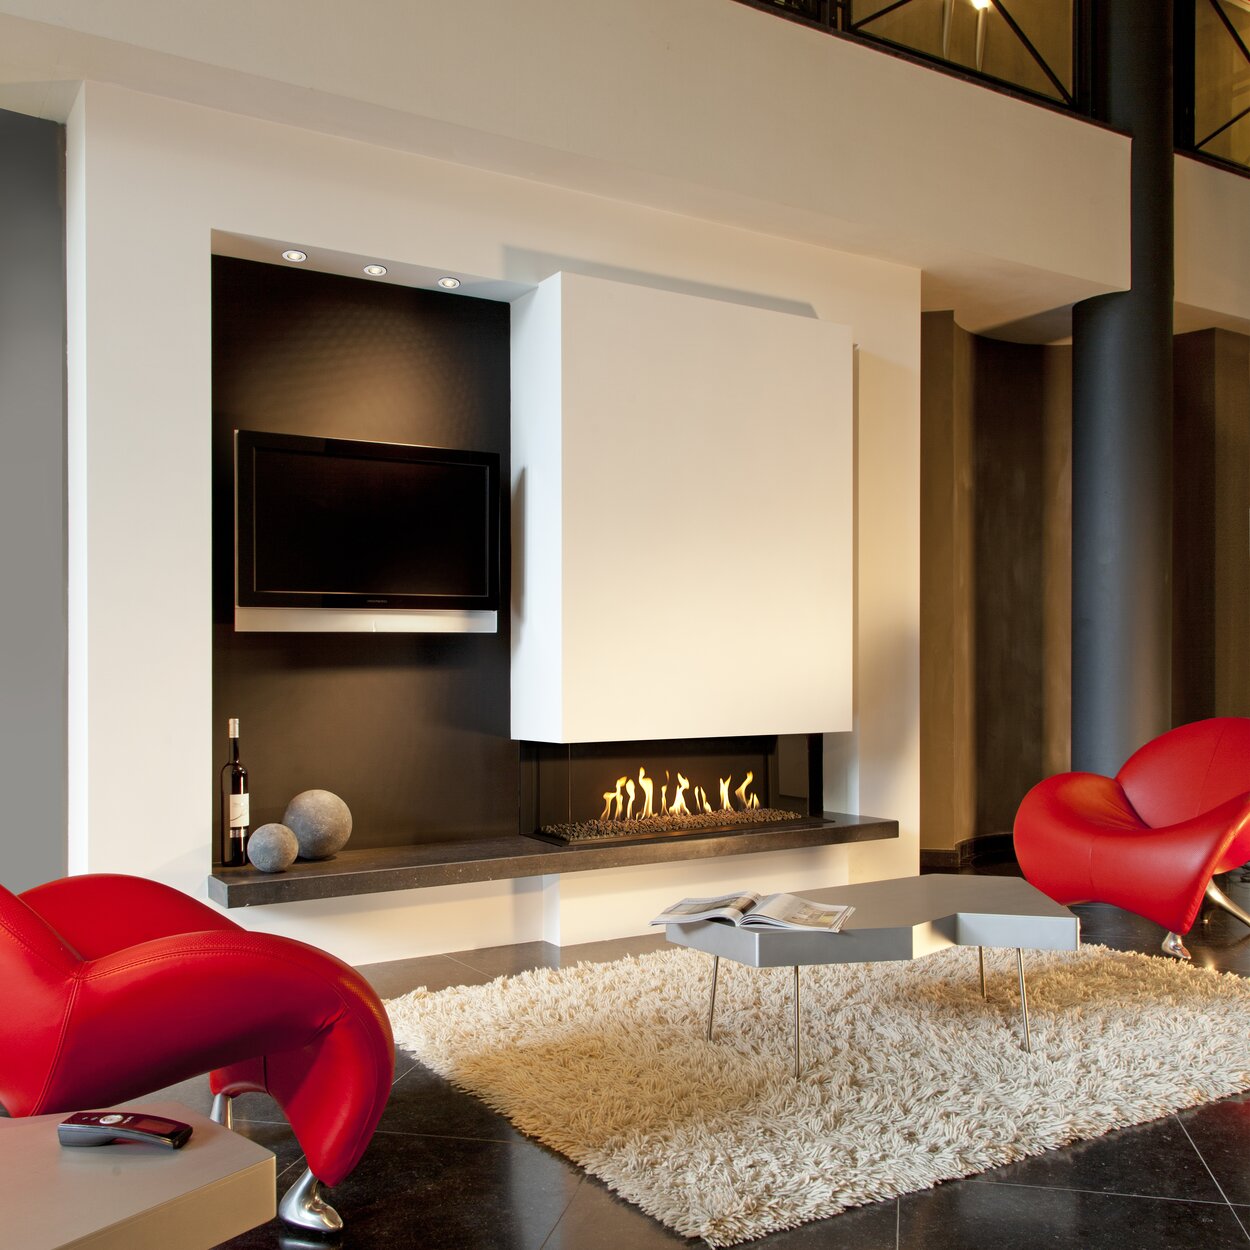 Gas-Kamin G110/37S dreiseitig mit Steinen im Brennraum in grossem Wohnraum mit roten Sesseln 